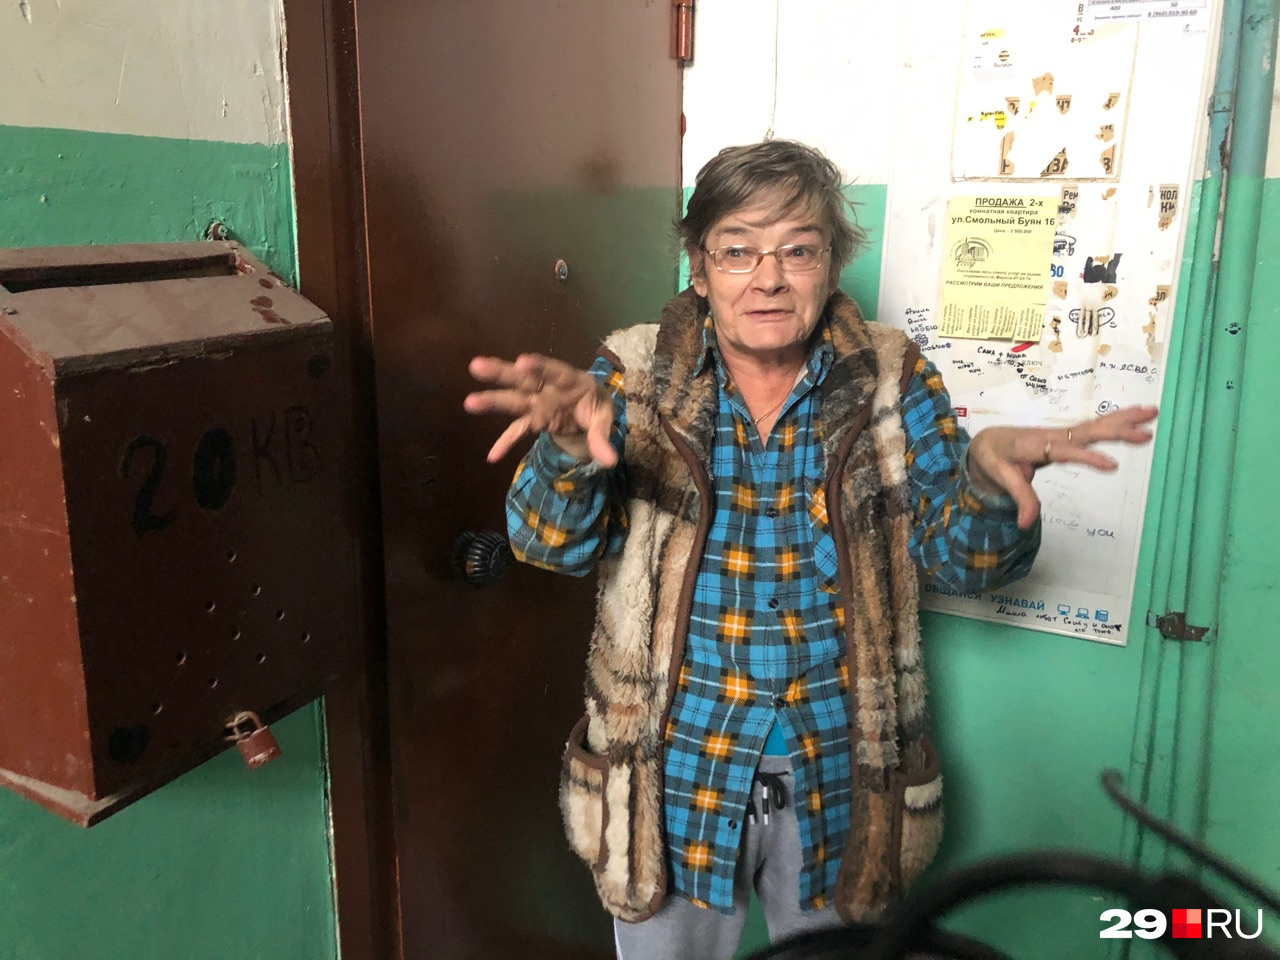 Людмила — староста дома, знает лучше всех, что именно нужно менять в здании